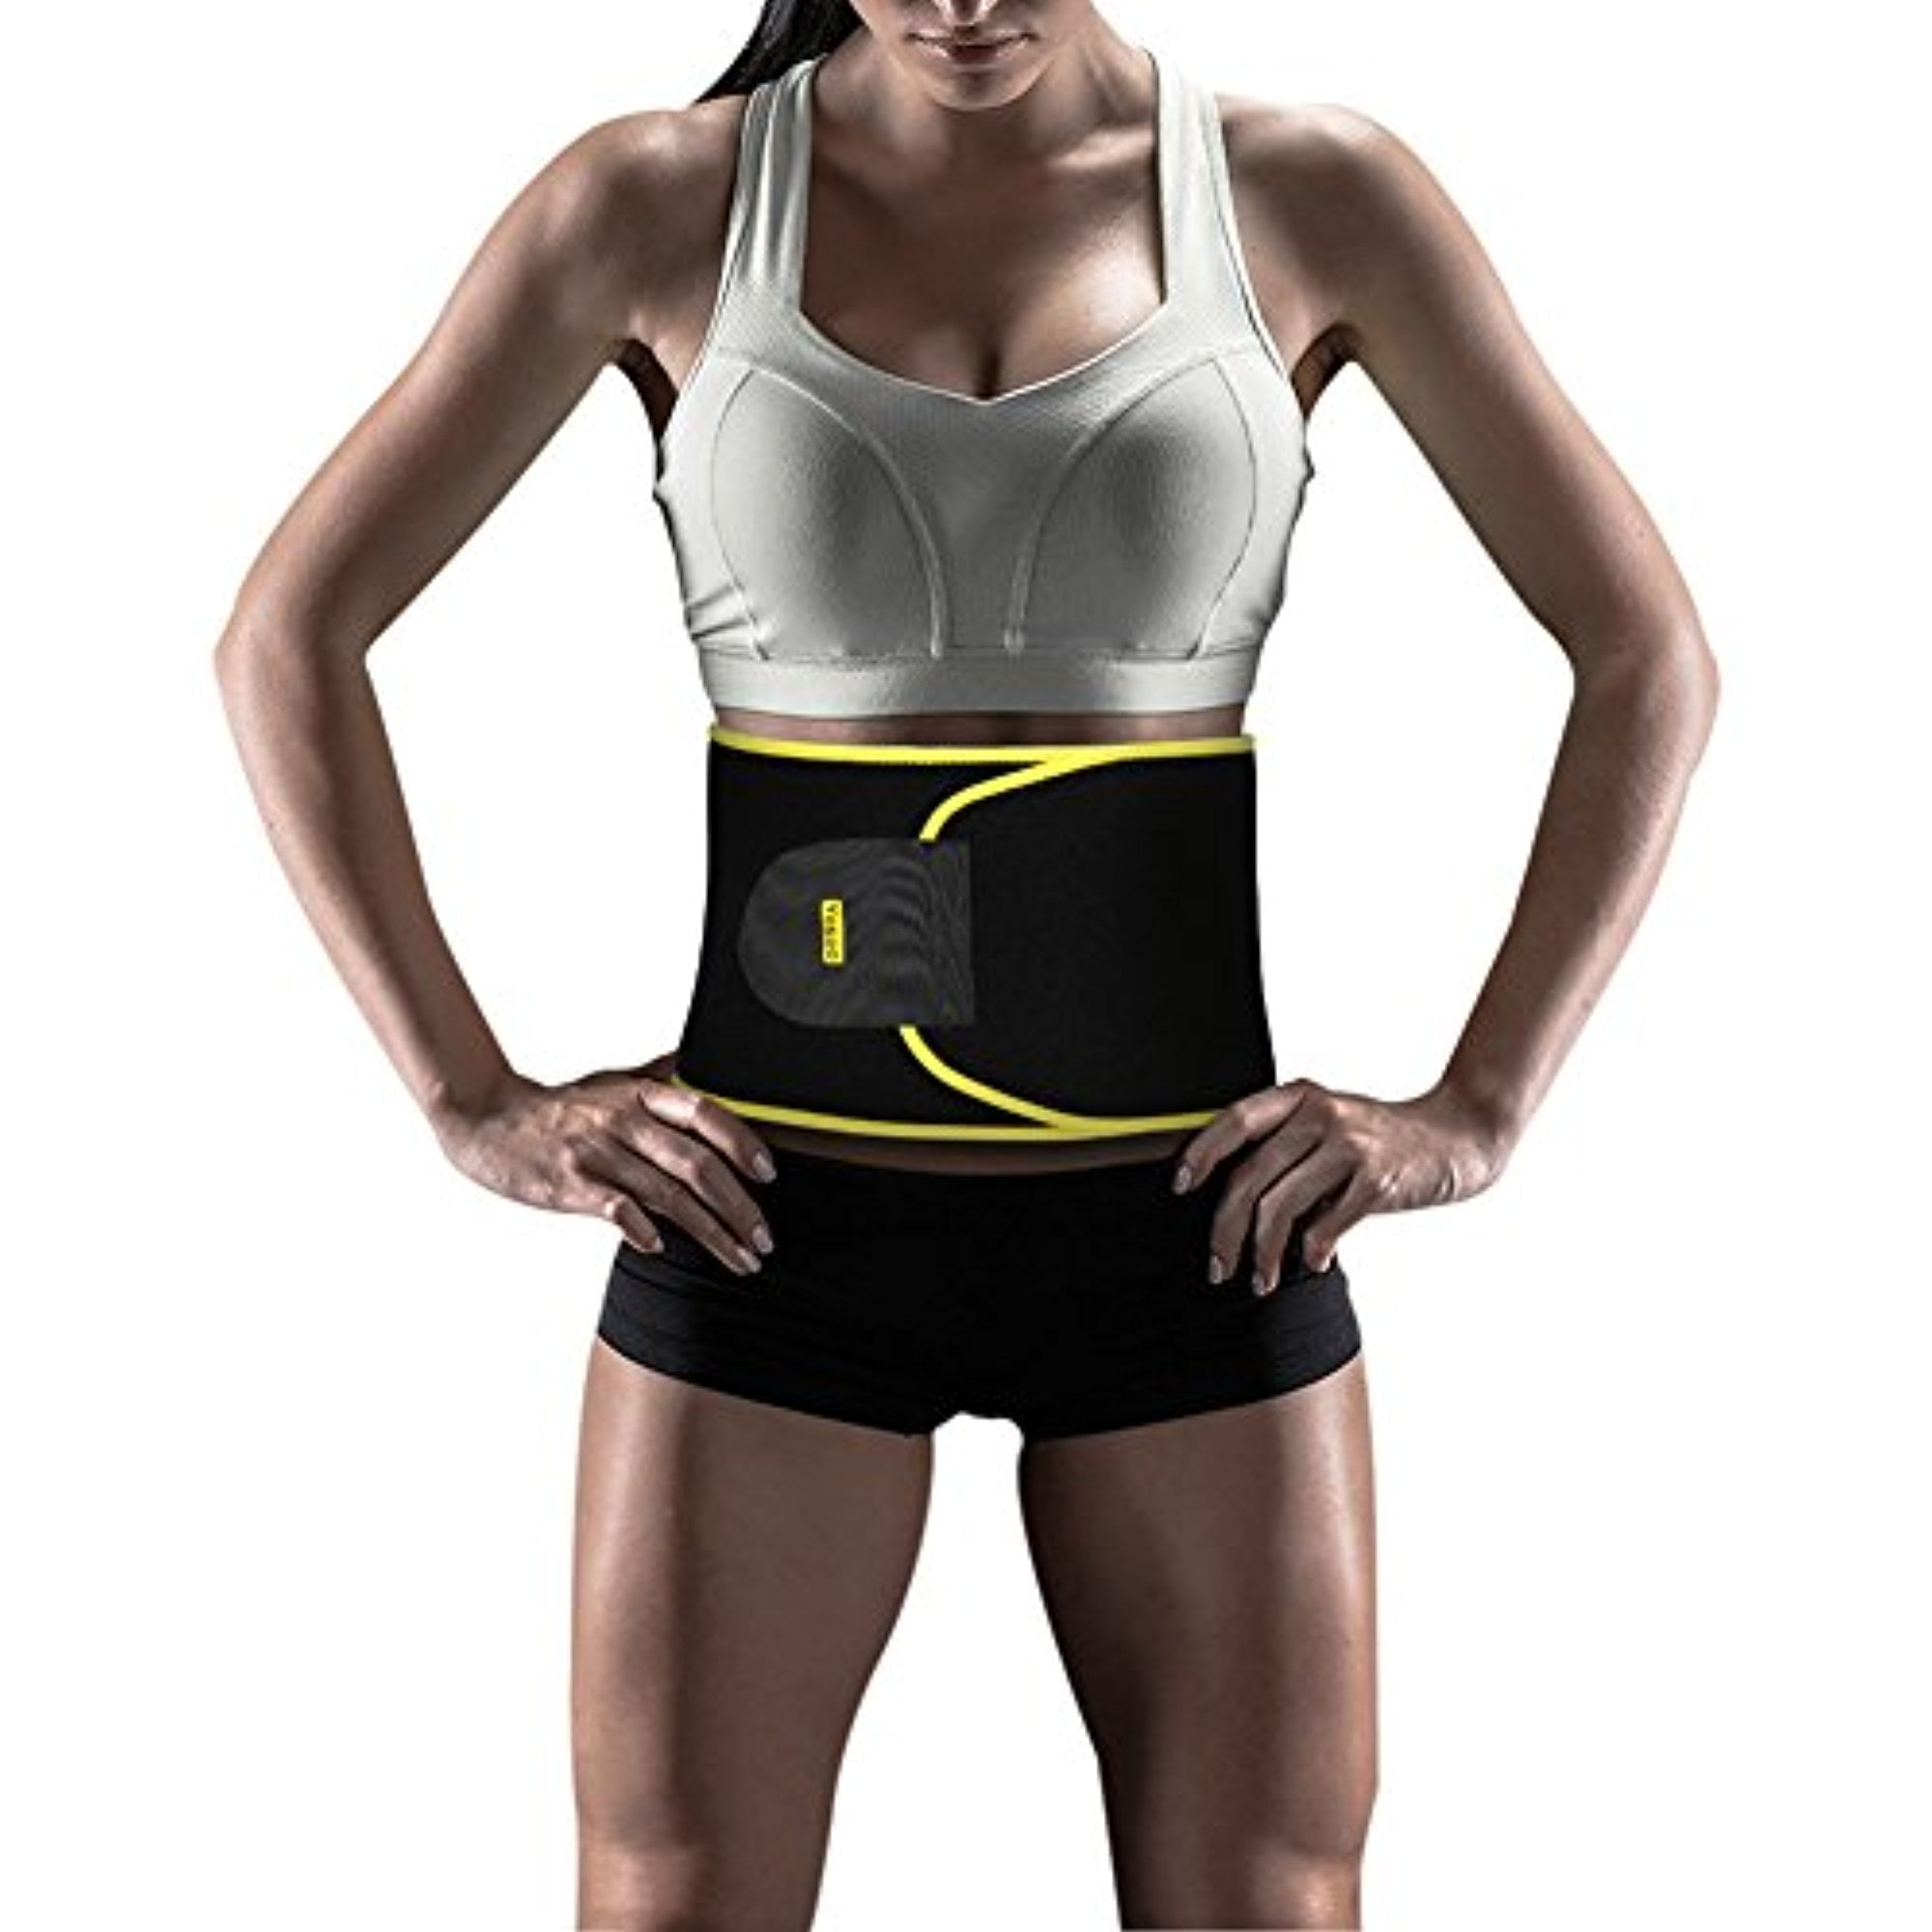 ActiveGear Waist Trainer for Women & Men - Sweat Band Waist Trimmer Belt  for a Toned Look 